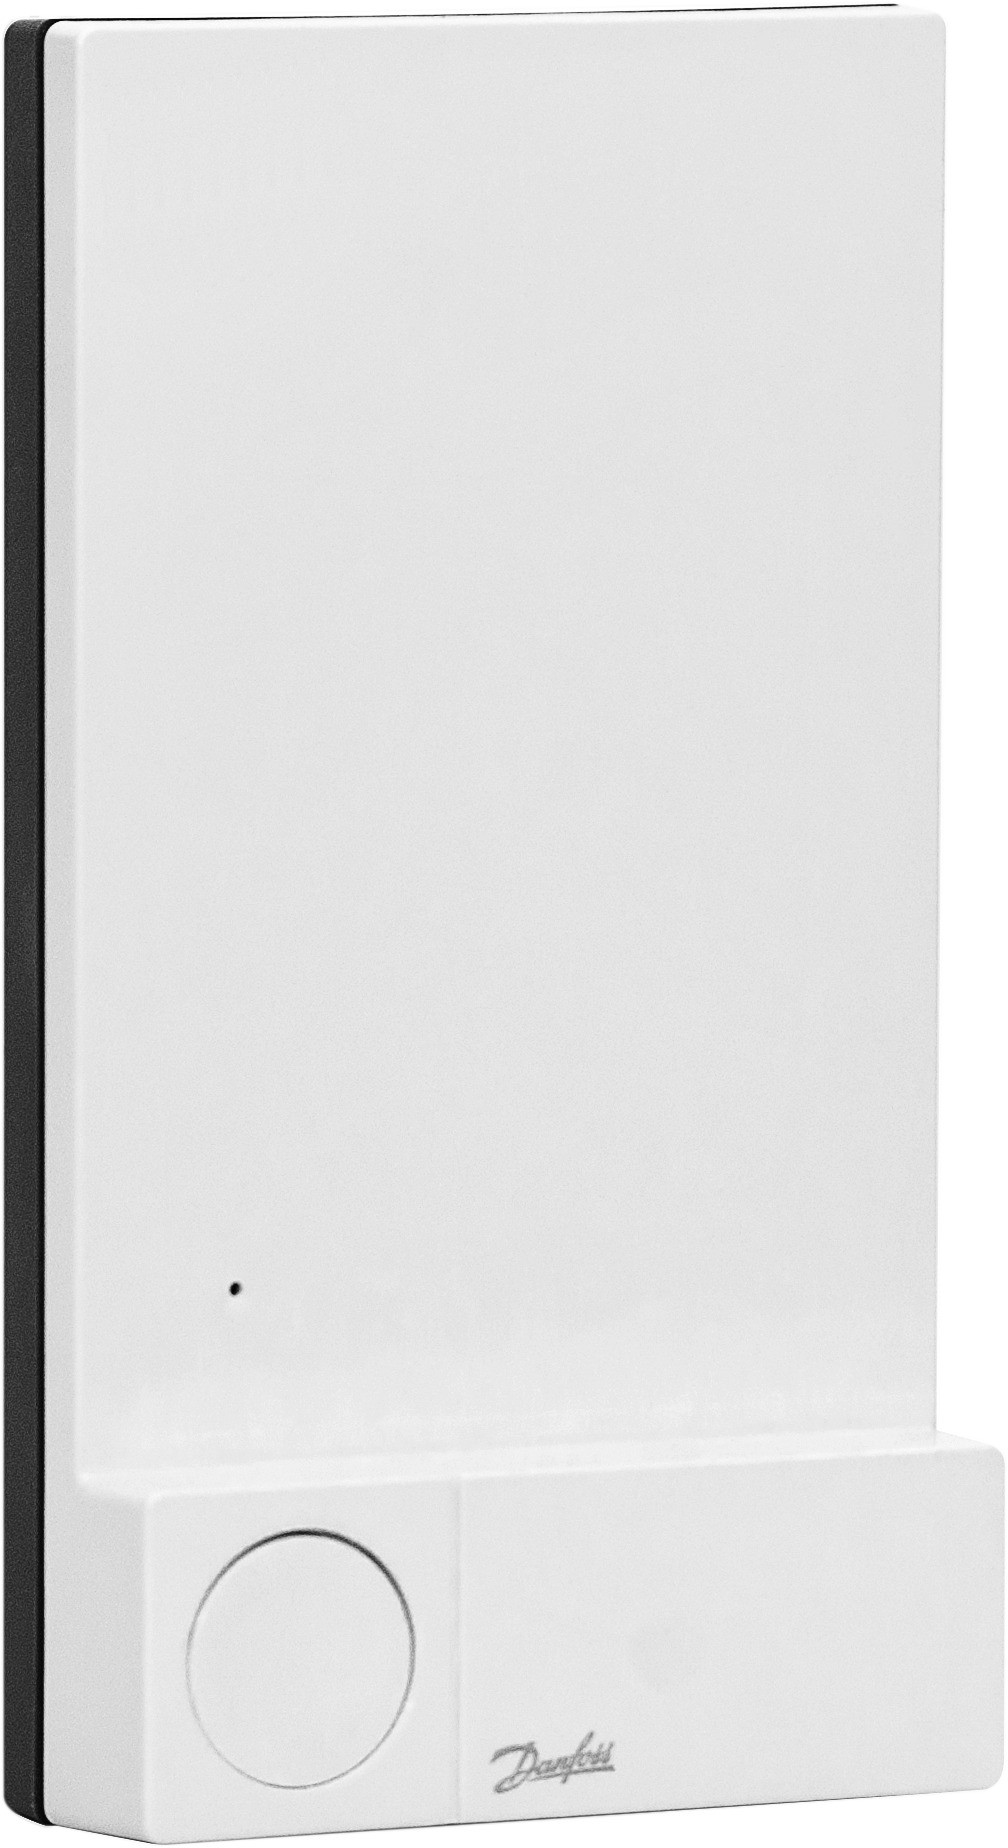 в продажу Модуль додатку Danfoss Icon 24В Zigbee (088U1130) - фото 3